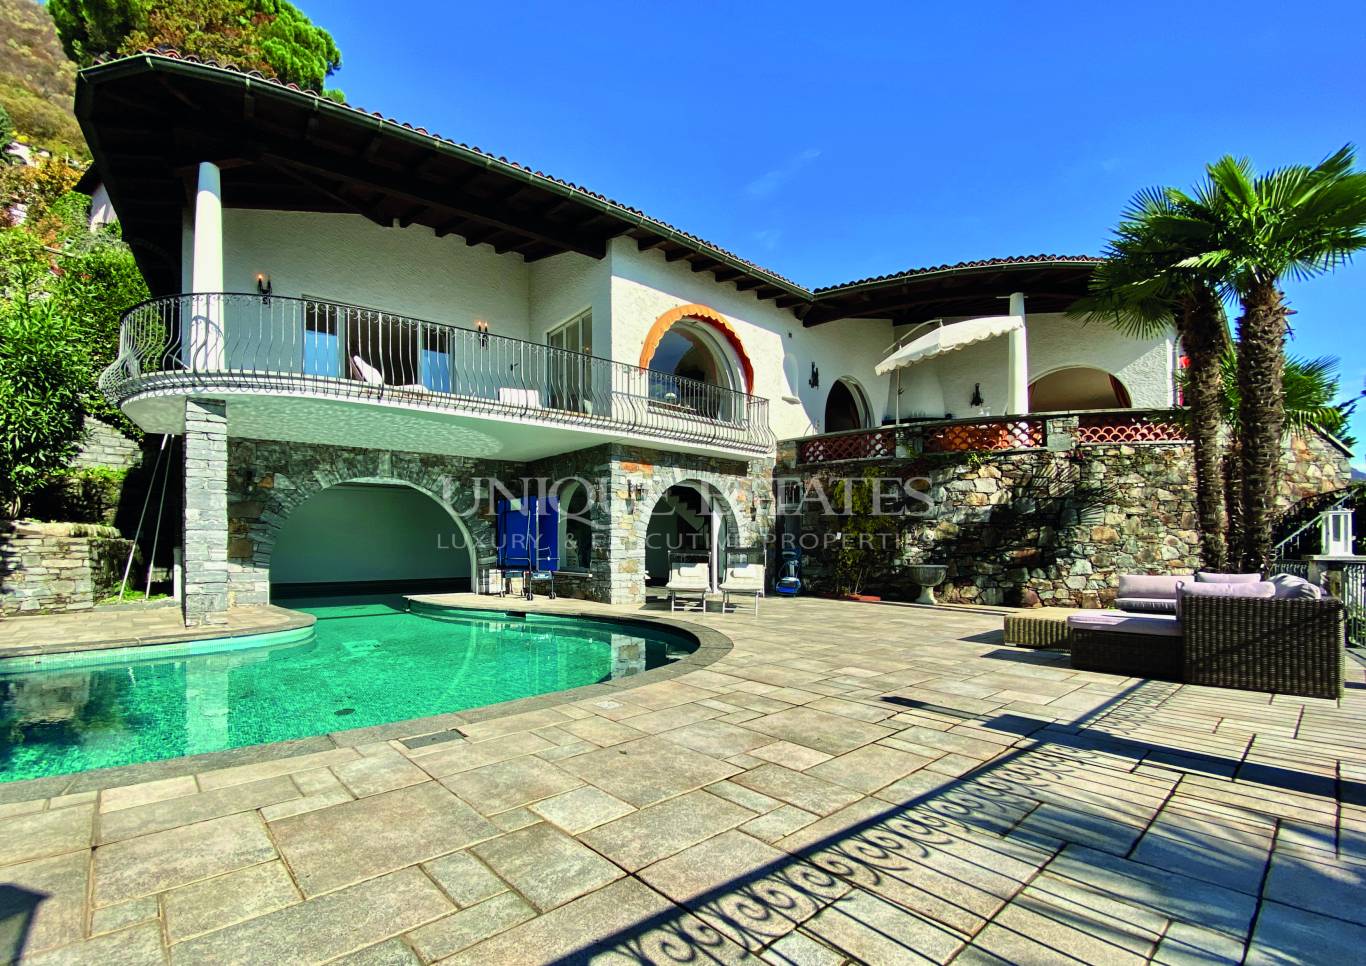 Къща за продажба в Брионе сопра Минузио,  - код на имота: N15232 - image 3